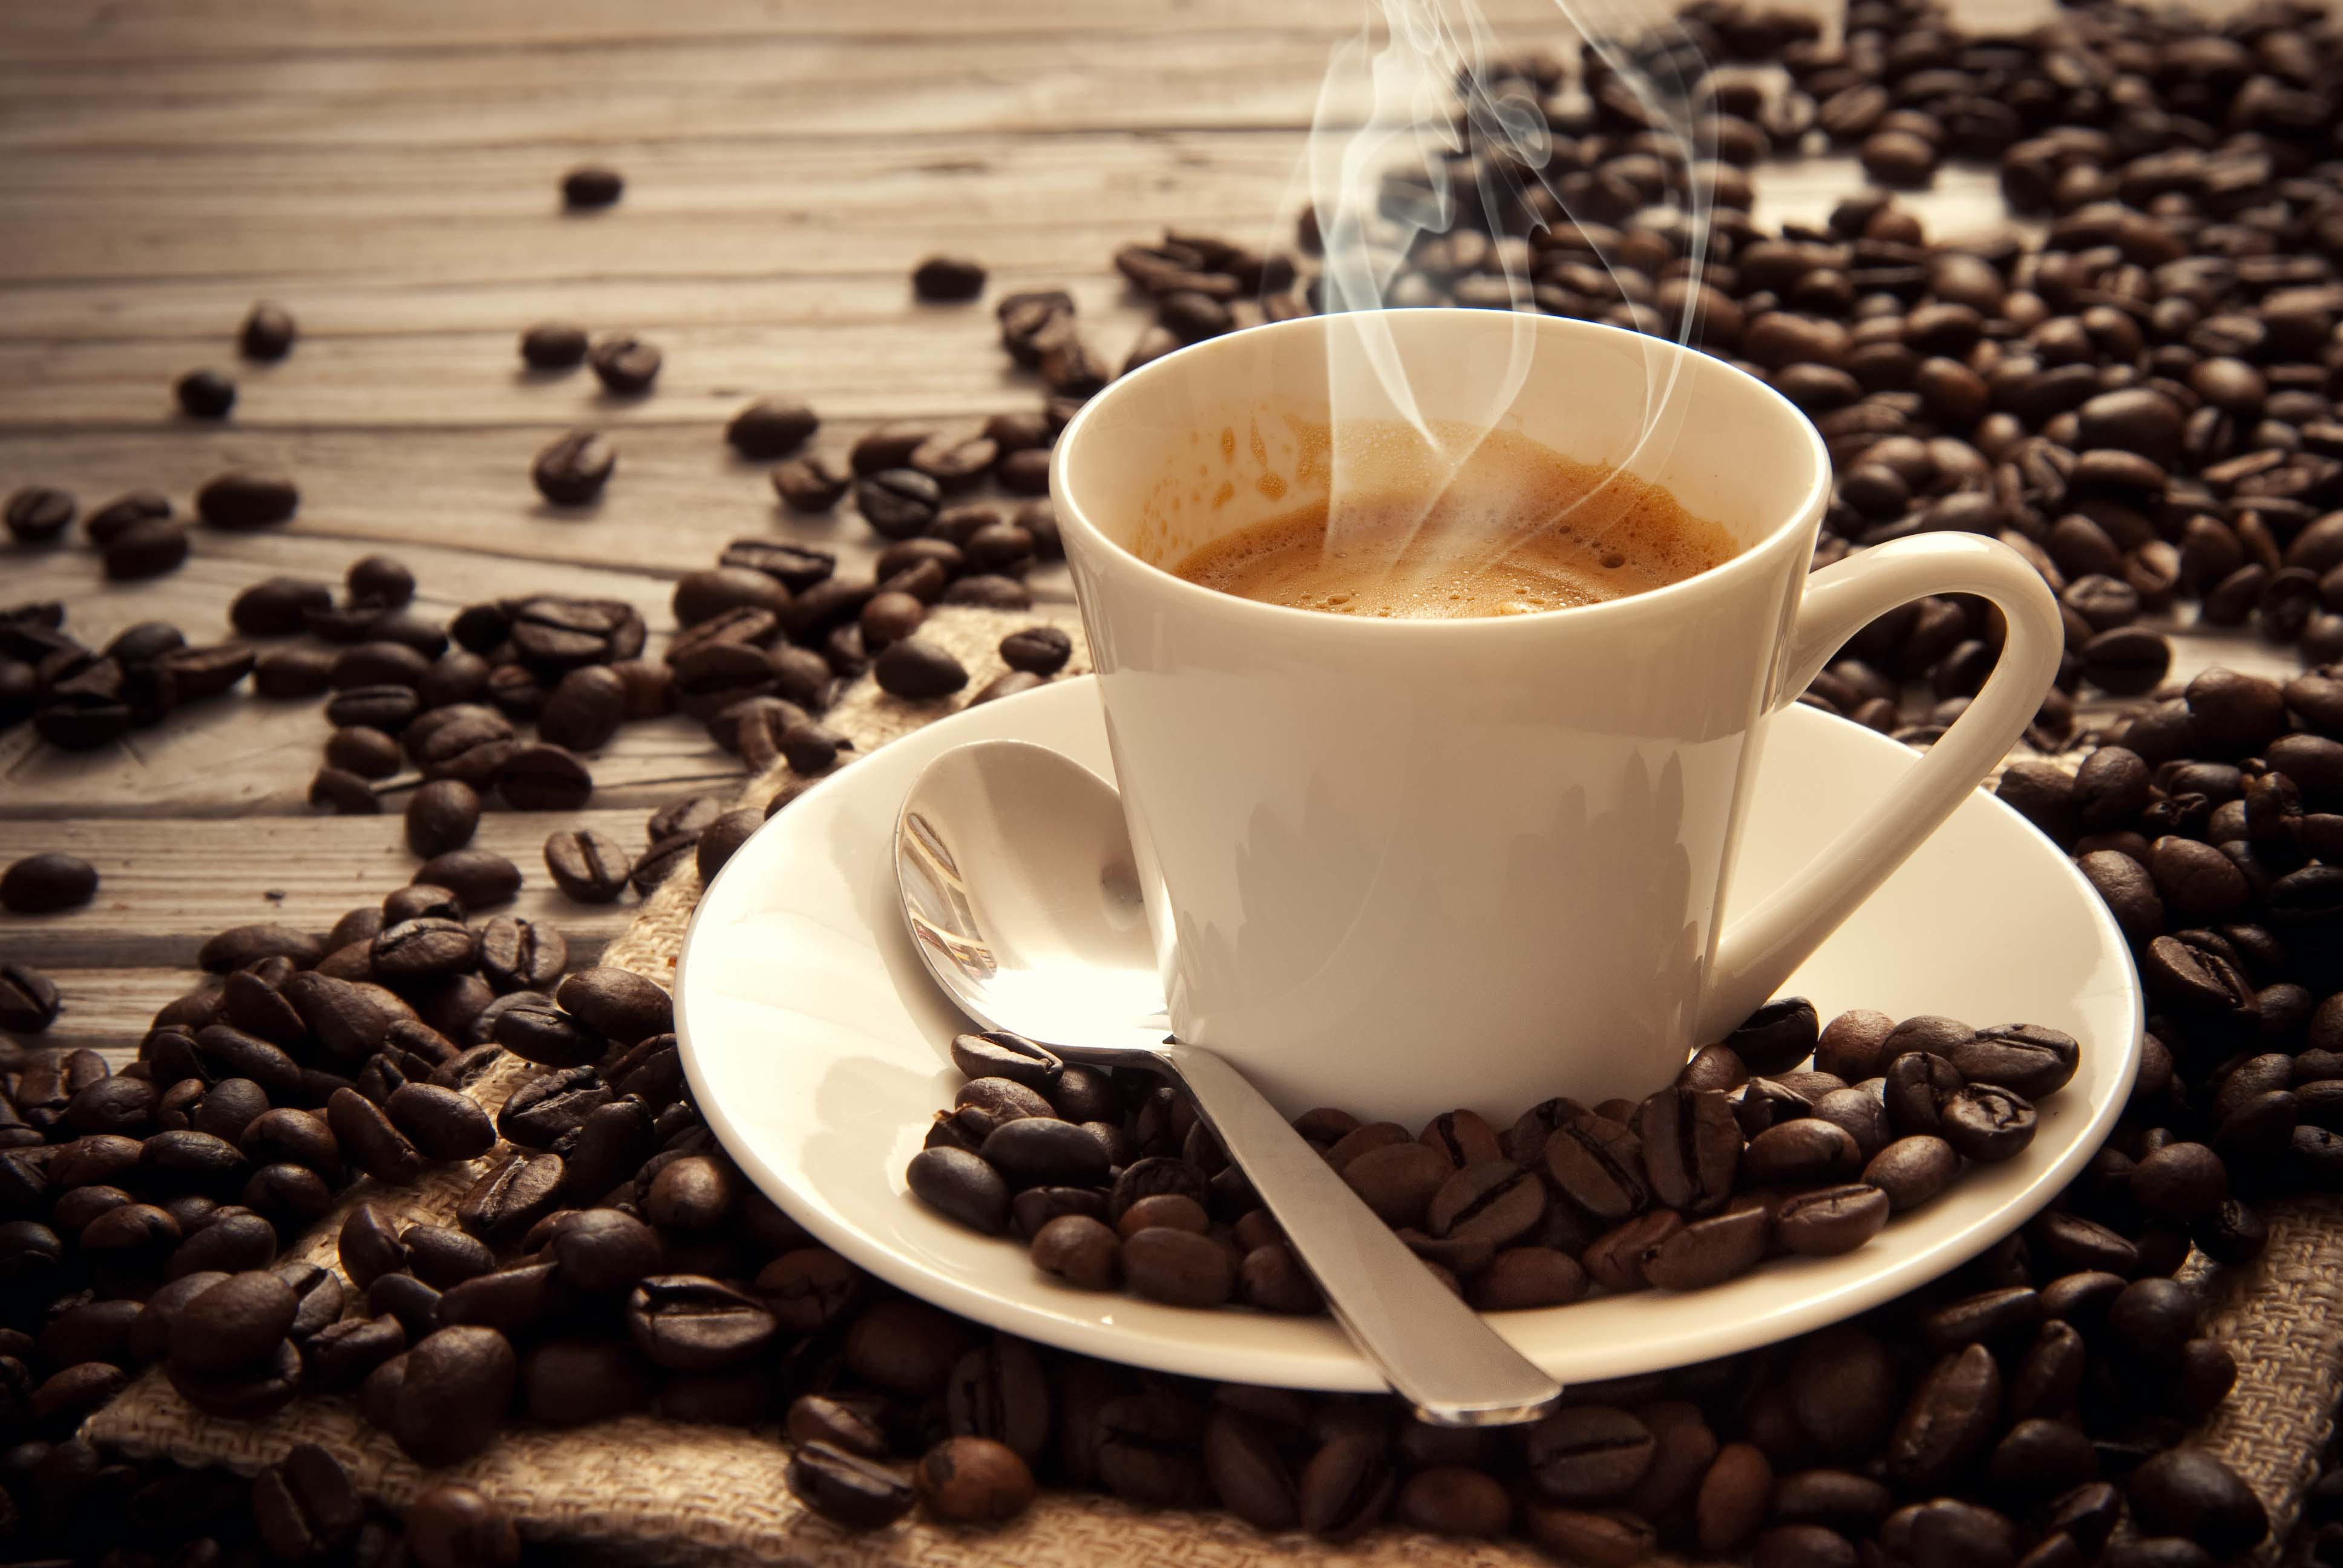 NGUYEN CHAT COFFEE là địa chỉ tin cậy của nhiều cửa hàng, đối tác